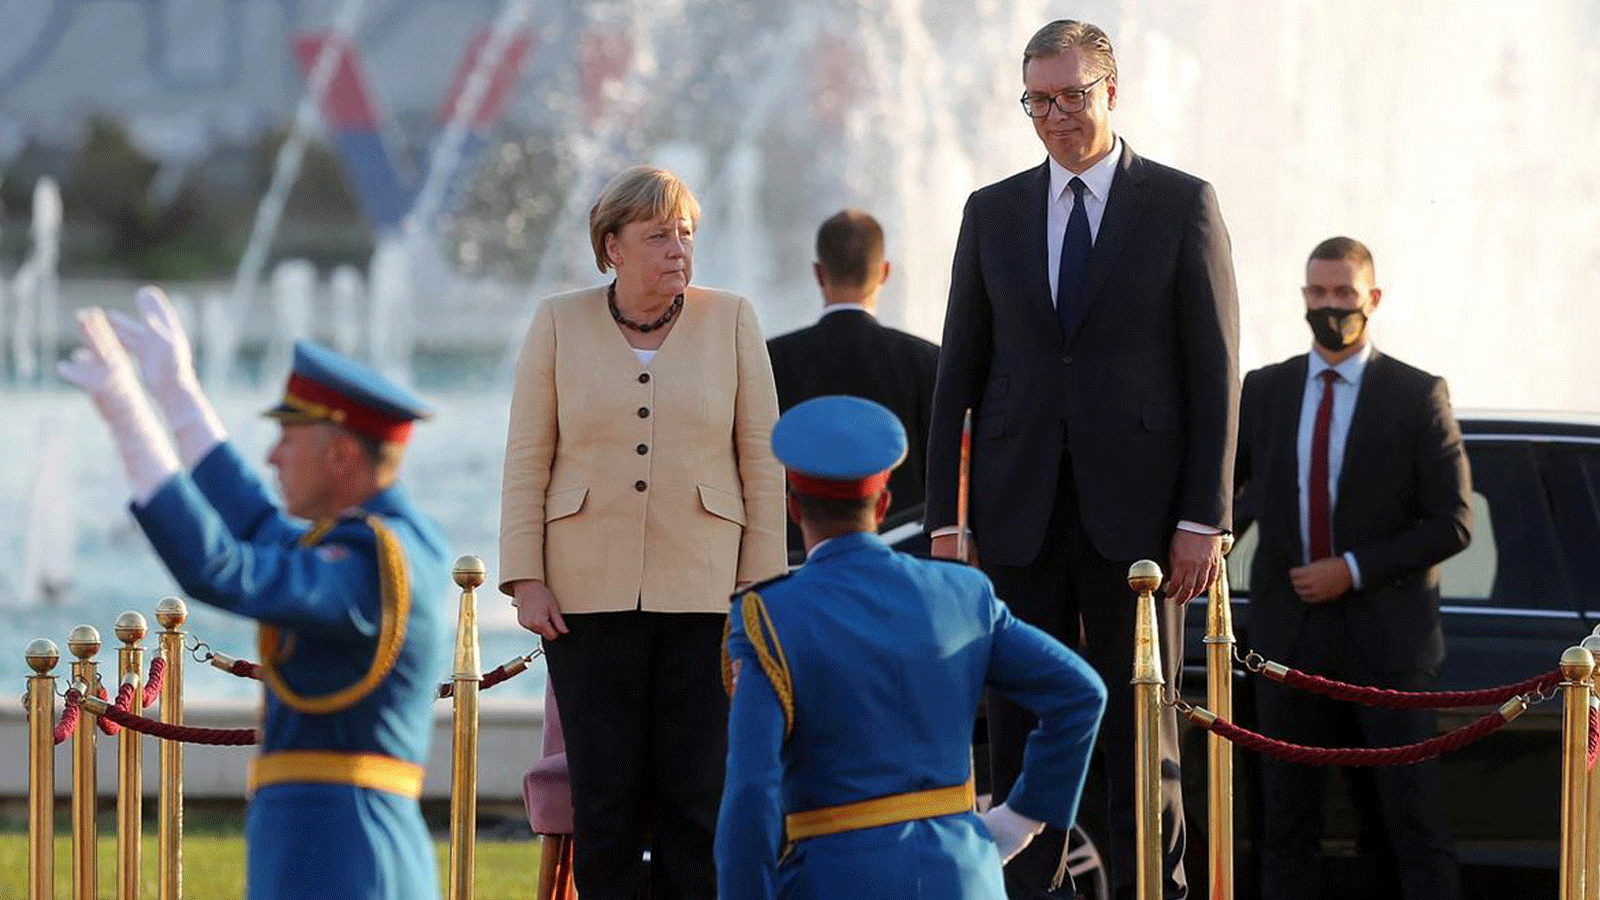 المستشارة الألمانية أنغيلا ميركل مع الرئيس الصربي ألكسندر فوتشيتش خلال مراسم الاستقبال في صربيا